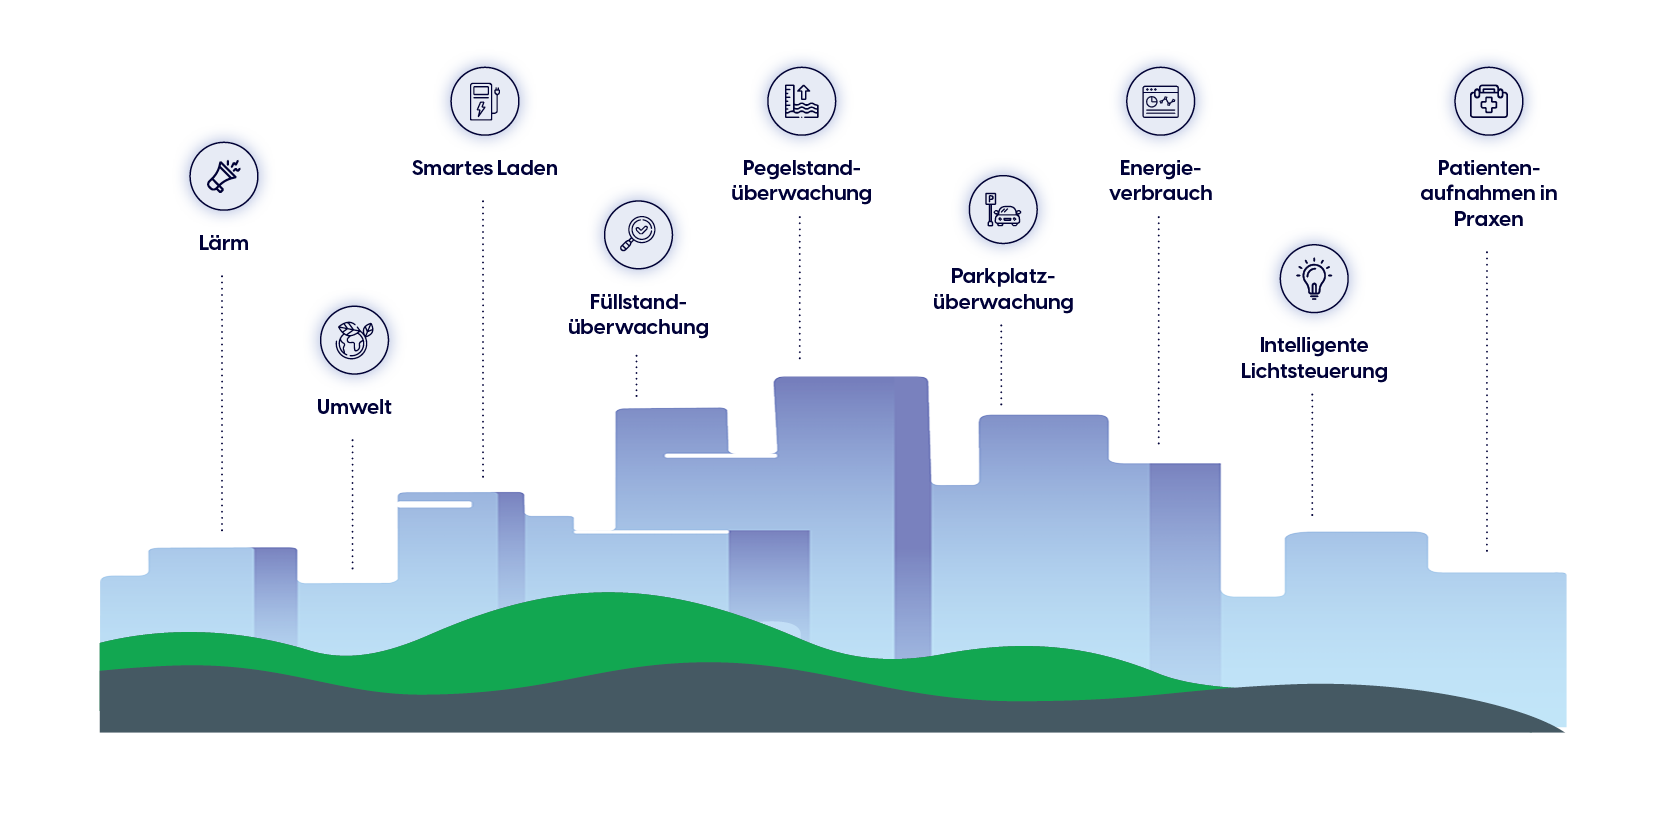 Unsere Obodo Smart City beschreibt eine Oberfläche mit gesammelten Daten, Konzepten und Auswertungen von modernen Technologien innerhalb eines urbanen Umfeldes.